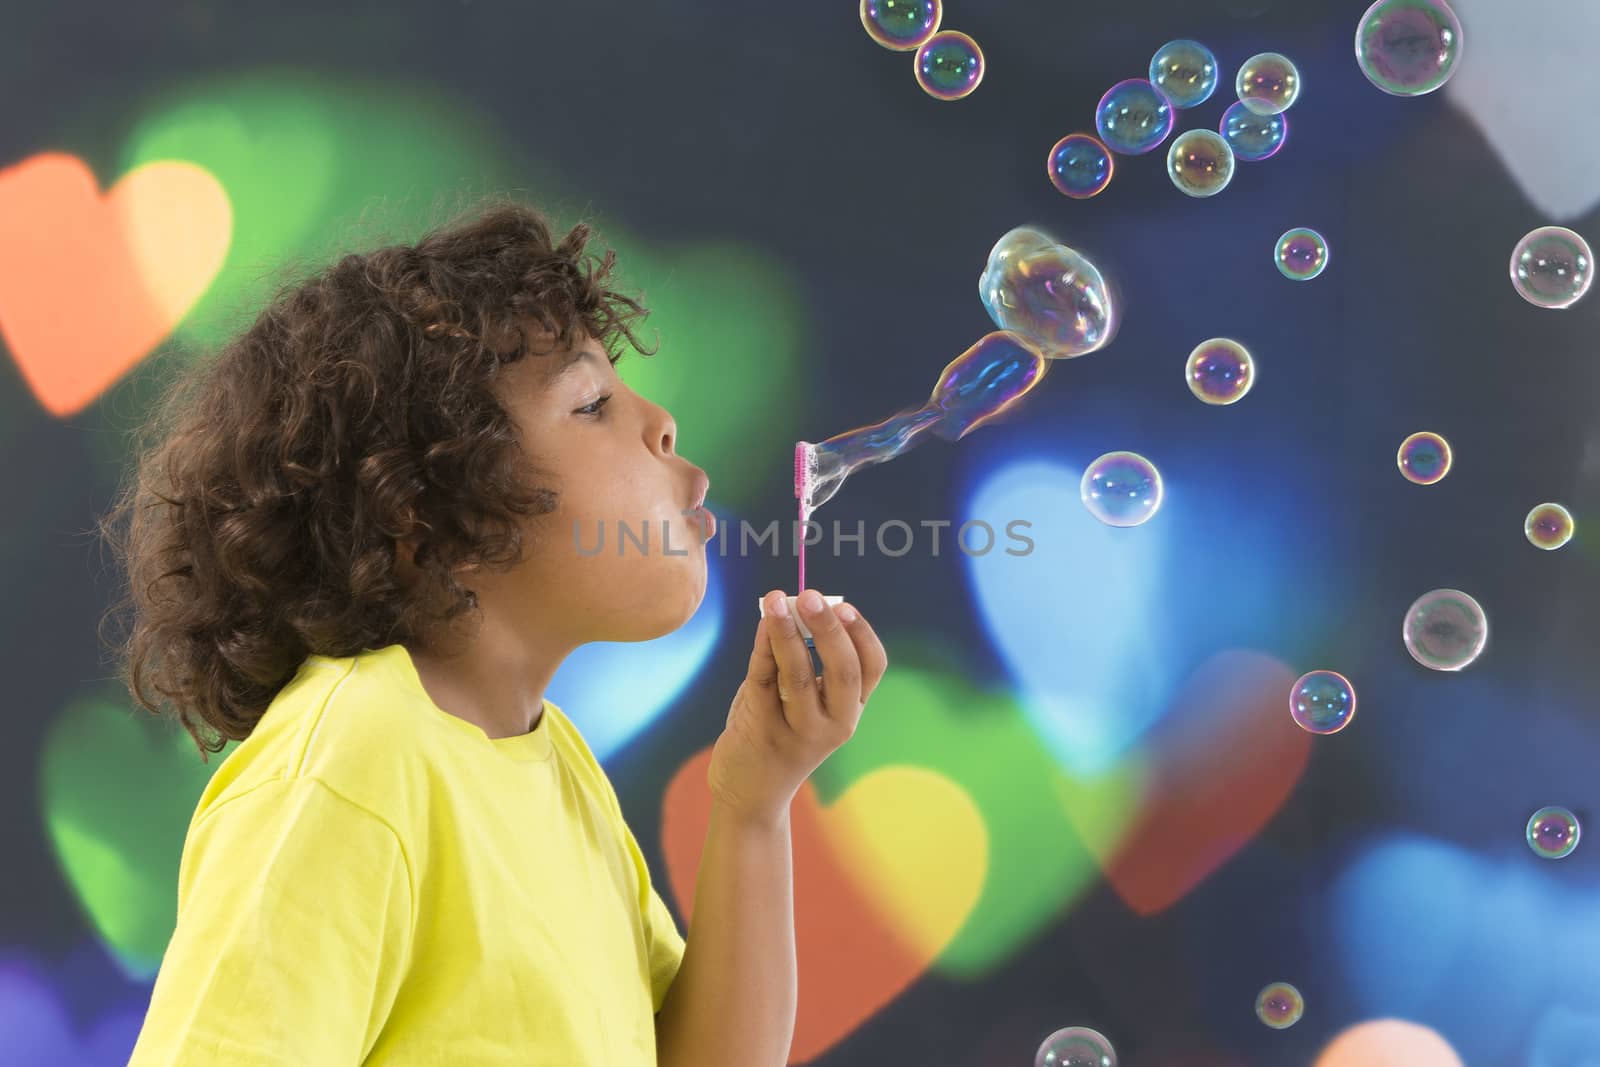 Boy blows up soap bubbles